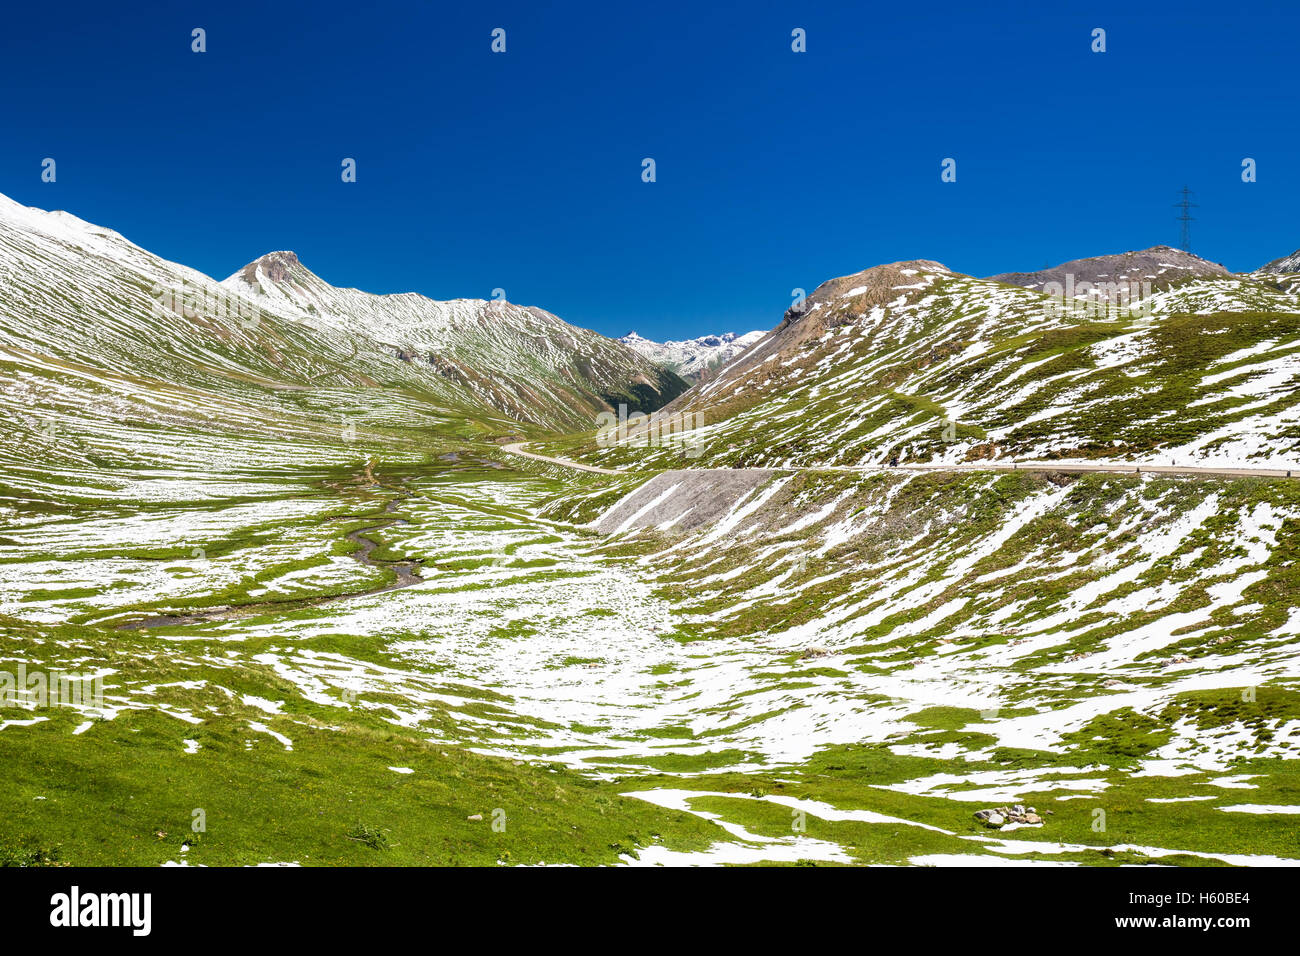 Route de montagne à col d'Albula - col de montagne suisse dans le canton des Grisons. La Suisse. Banque D'Images